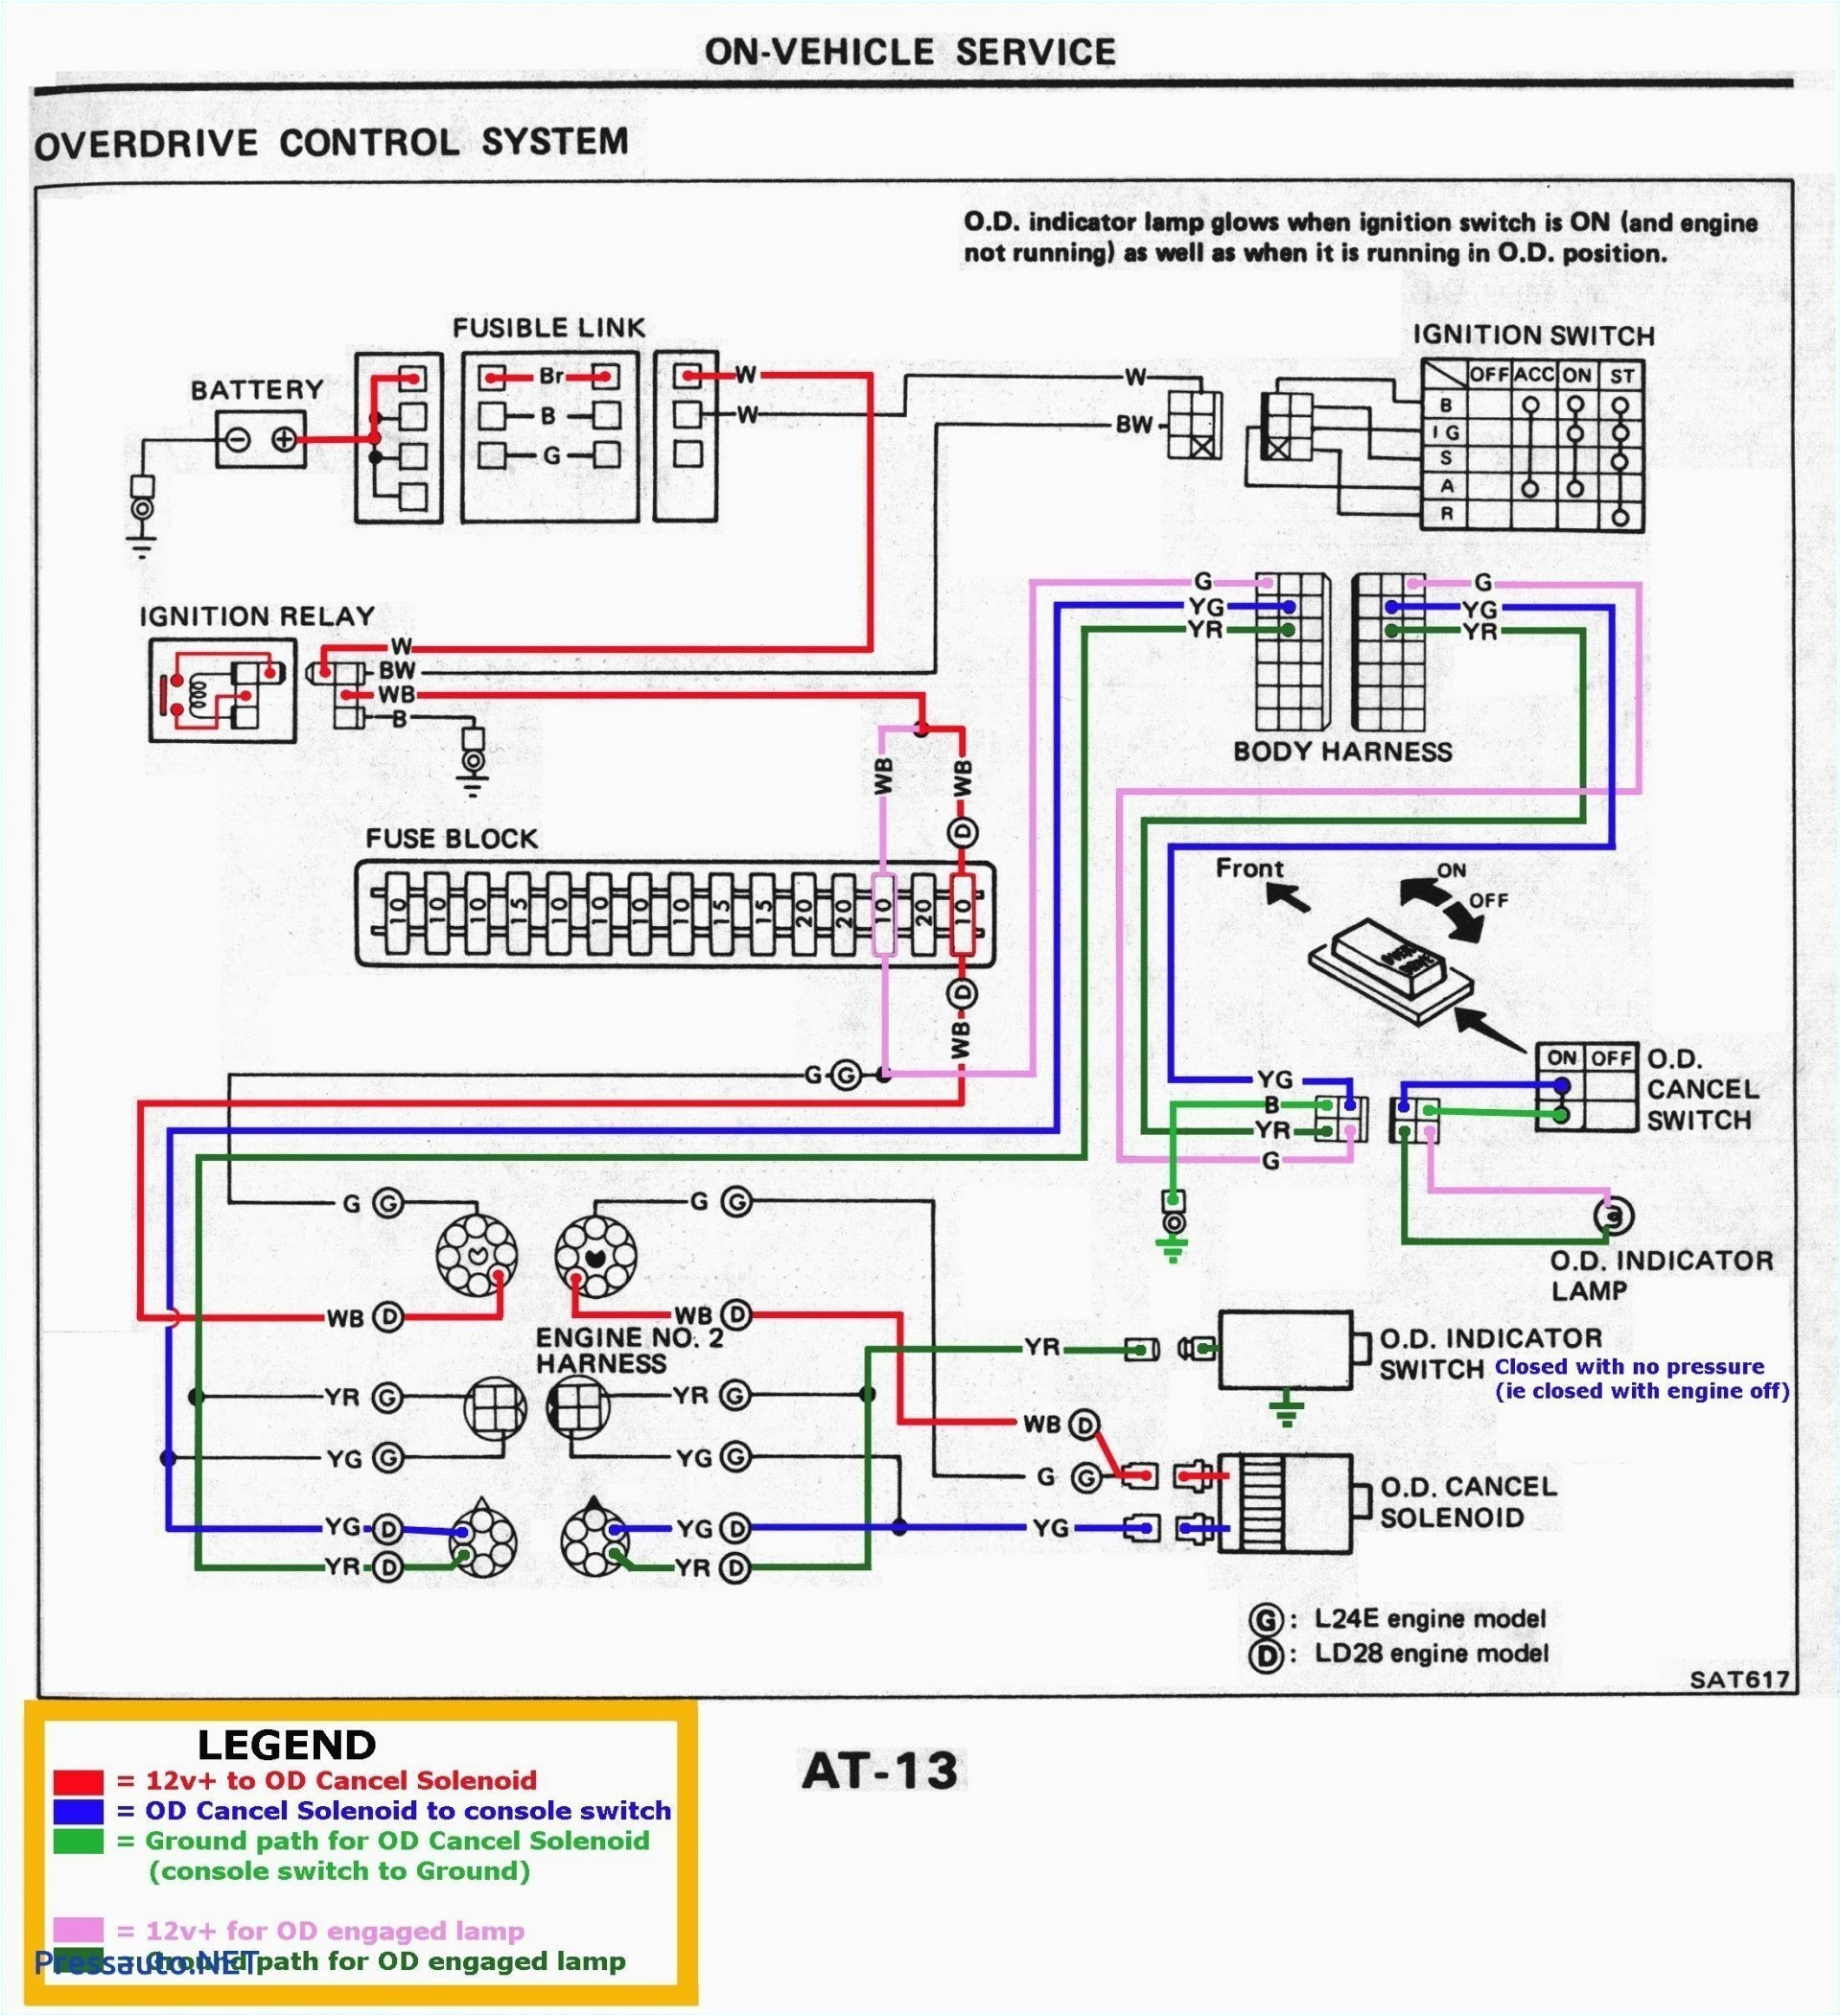 karr 4040a wiring diagram blog wiring diagram karr wiring diagram